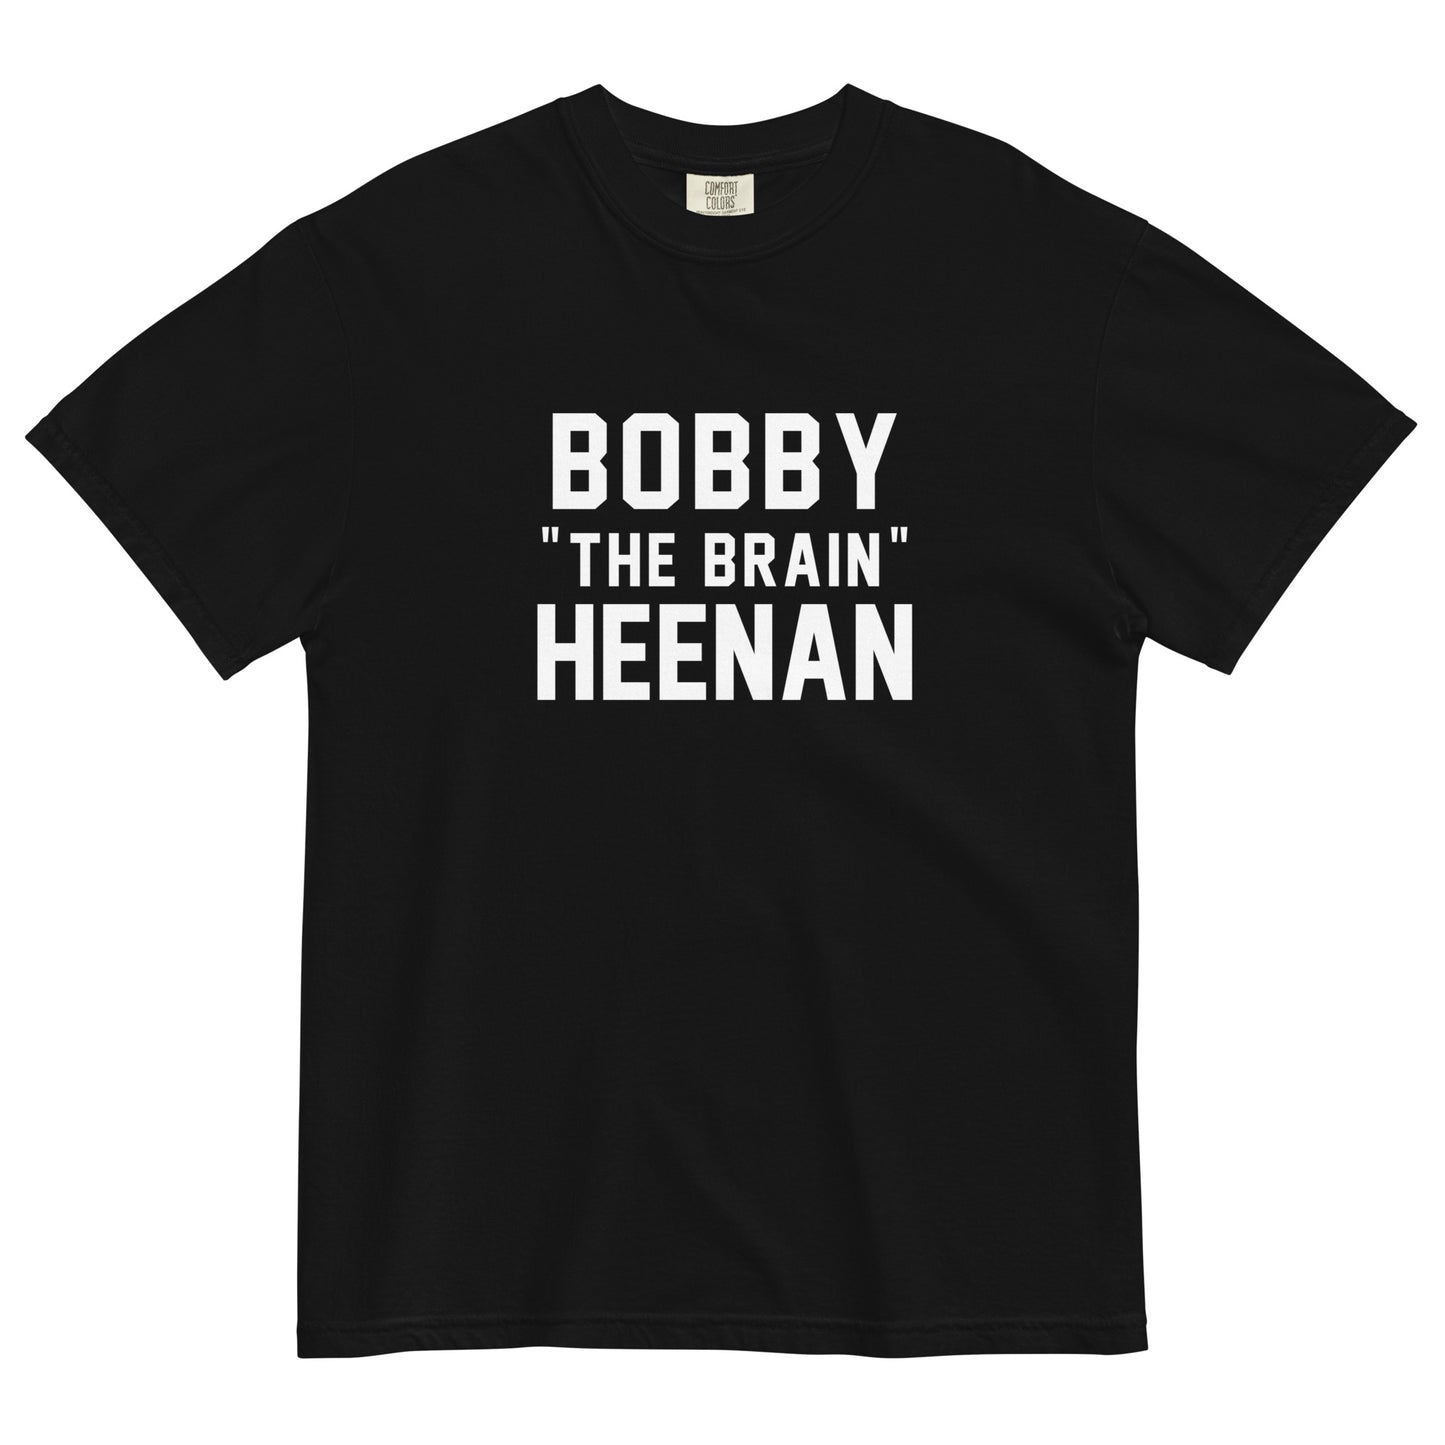 BOBBY "THE BRAIN" HEENAN